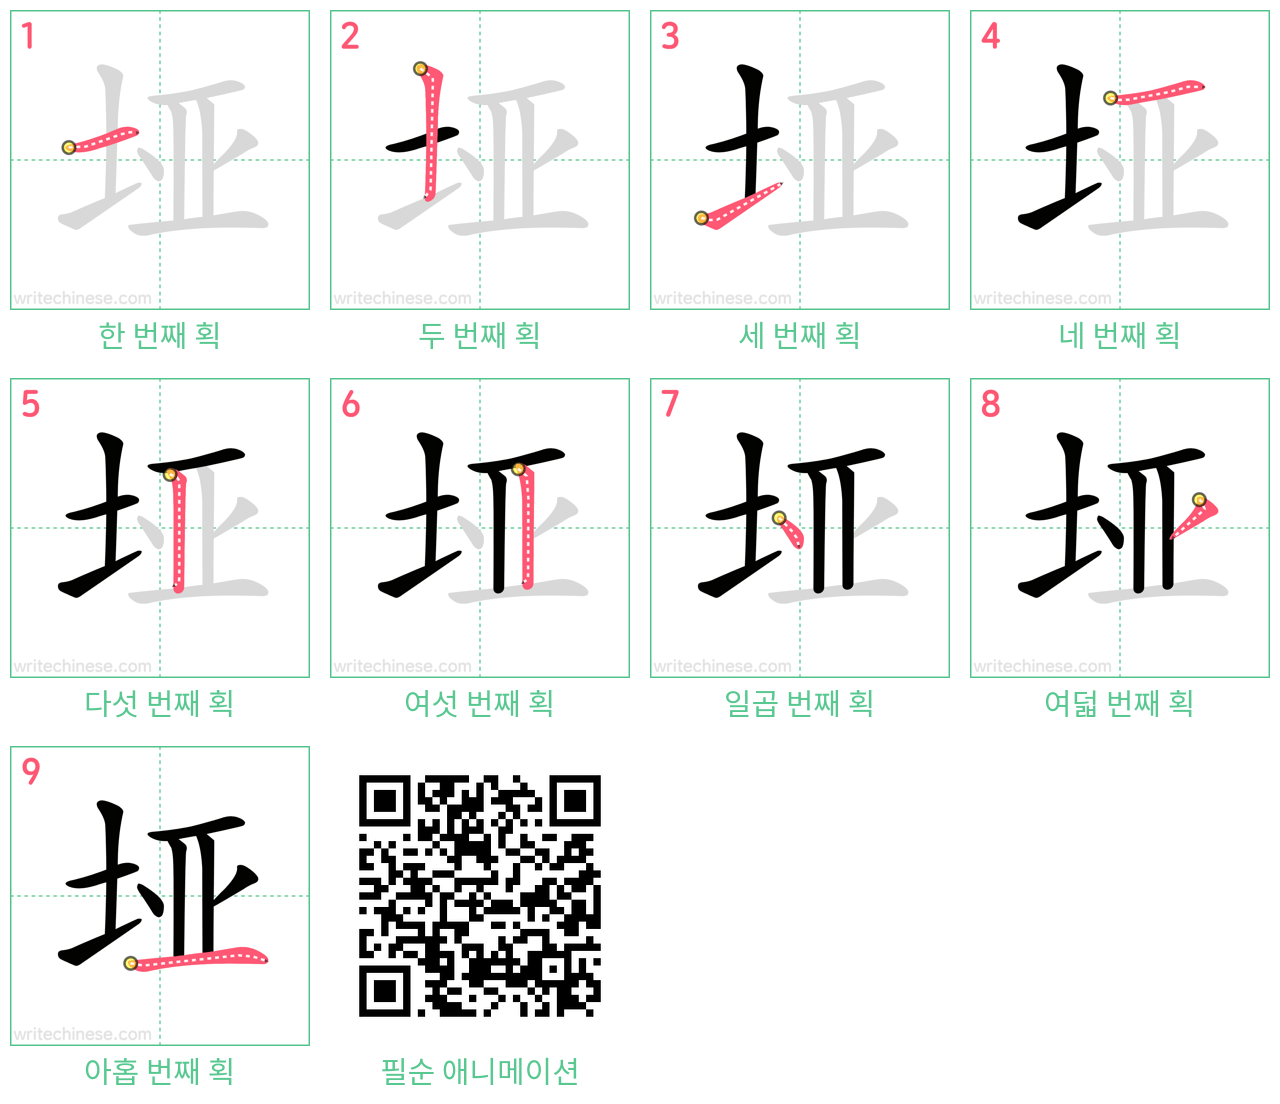 垭 step-by-step stroke order diagrams